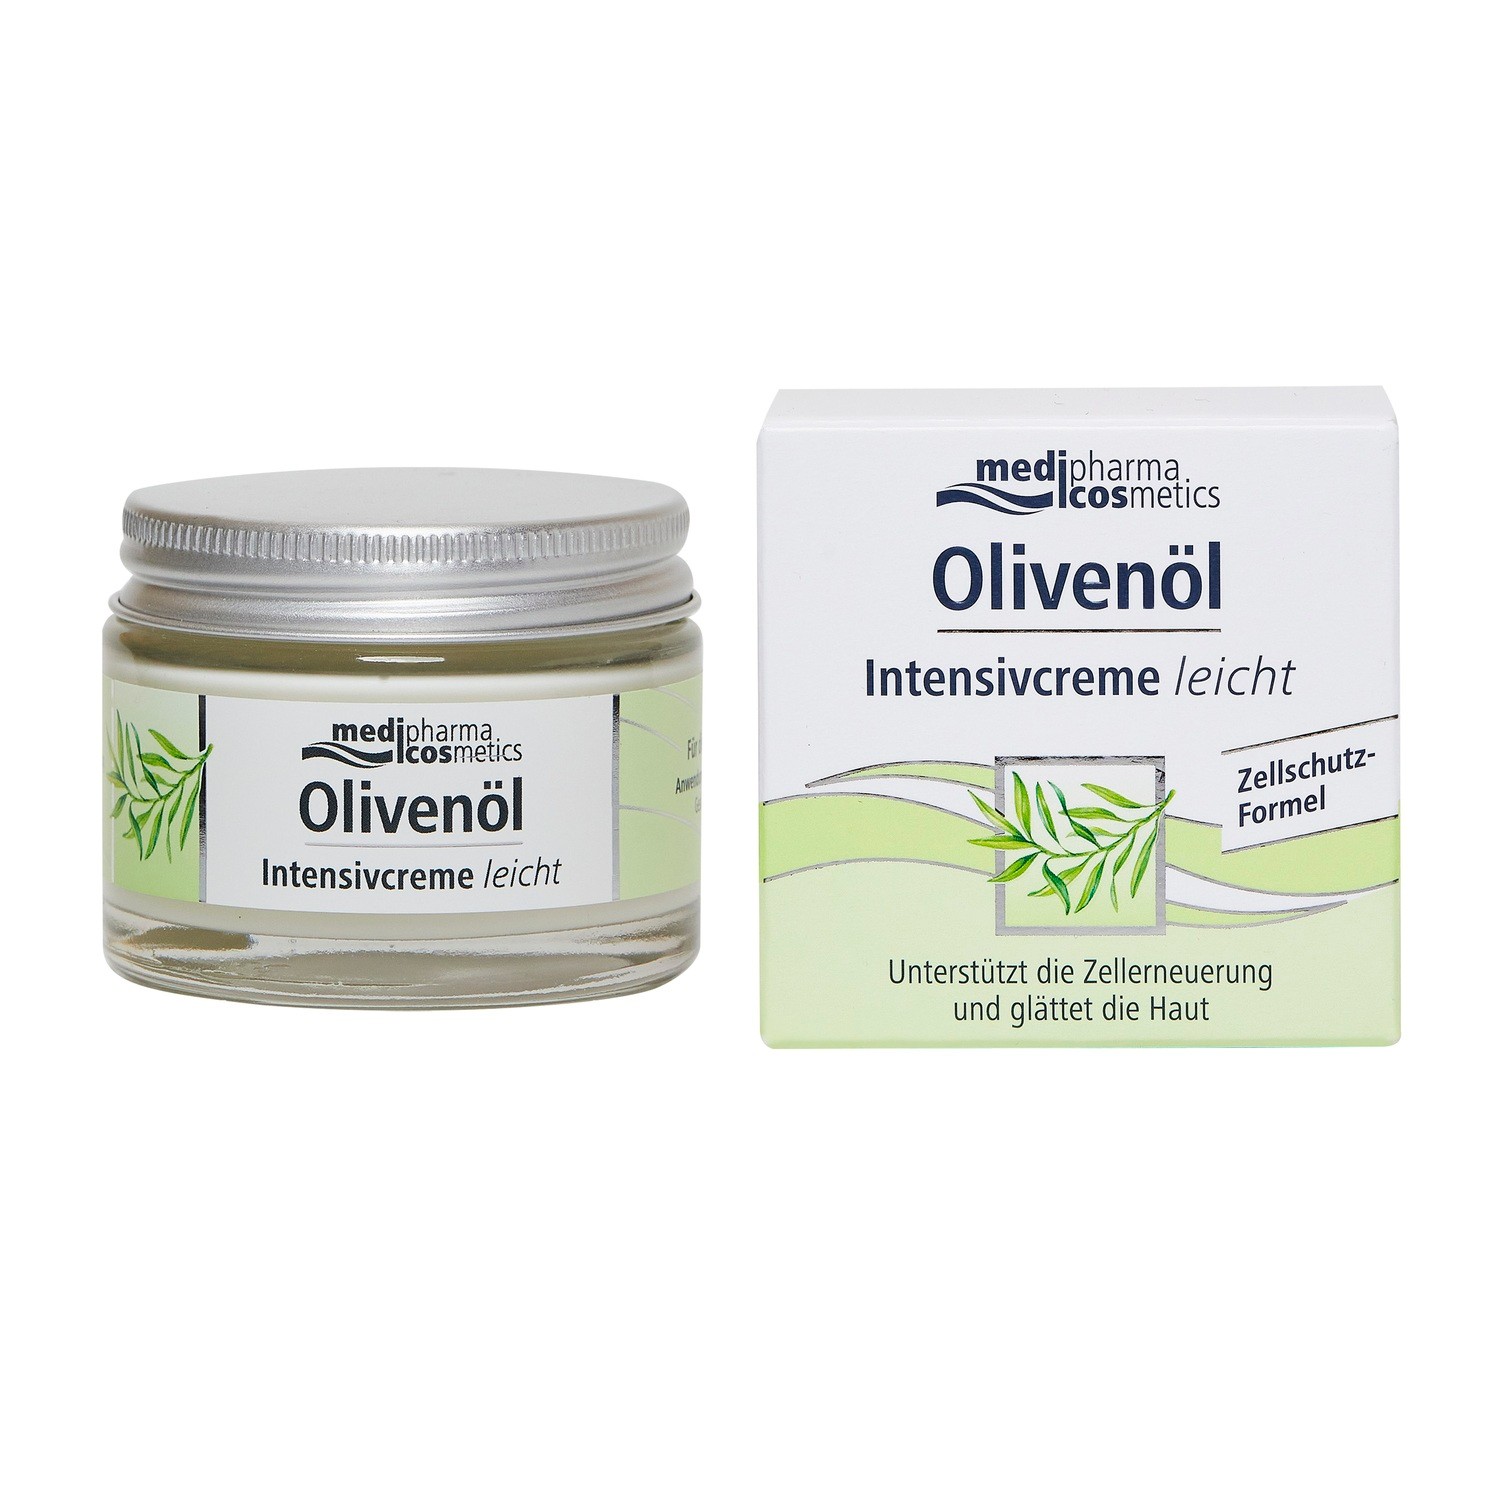 Купить Medipharma Cosmetics Крем для лица Olivenol Intensiv Легкий , 50 мл (Medipharma Cosmetics, Olivenol), Германия